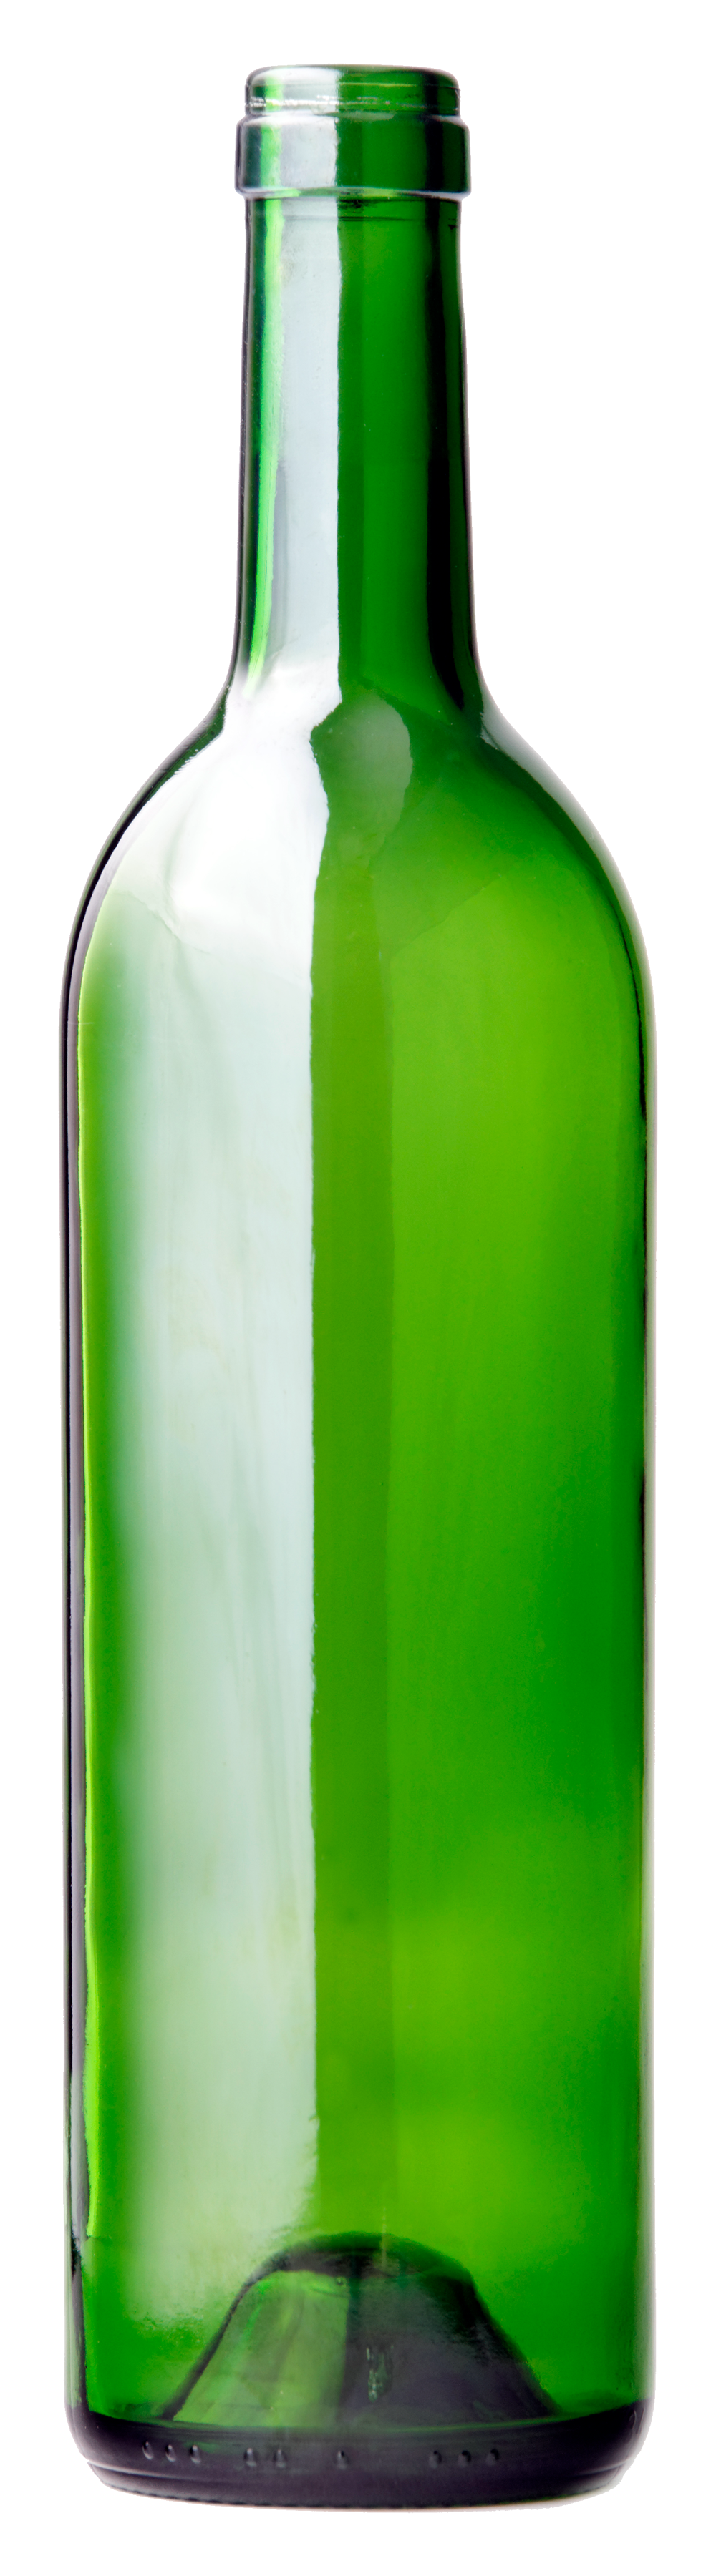 Bottiglia di vino in vetro verde